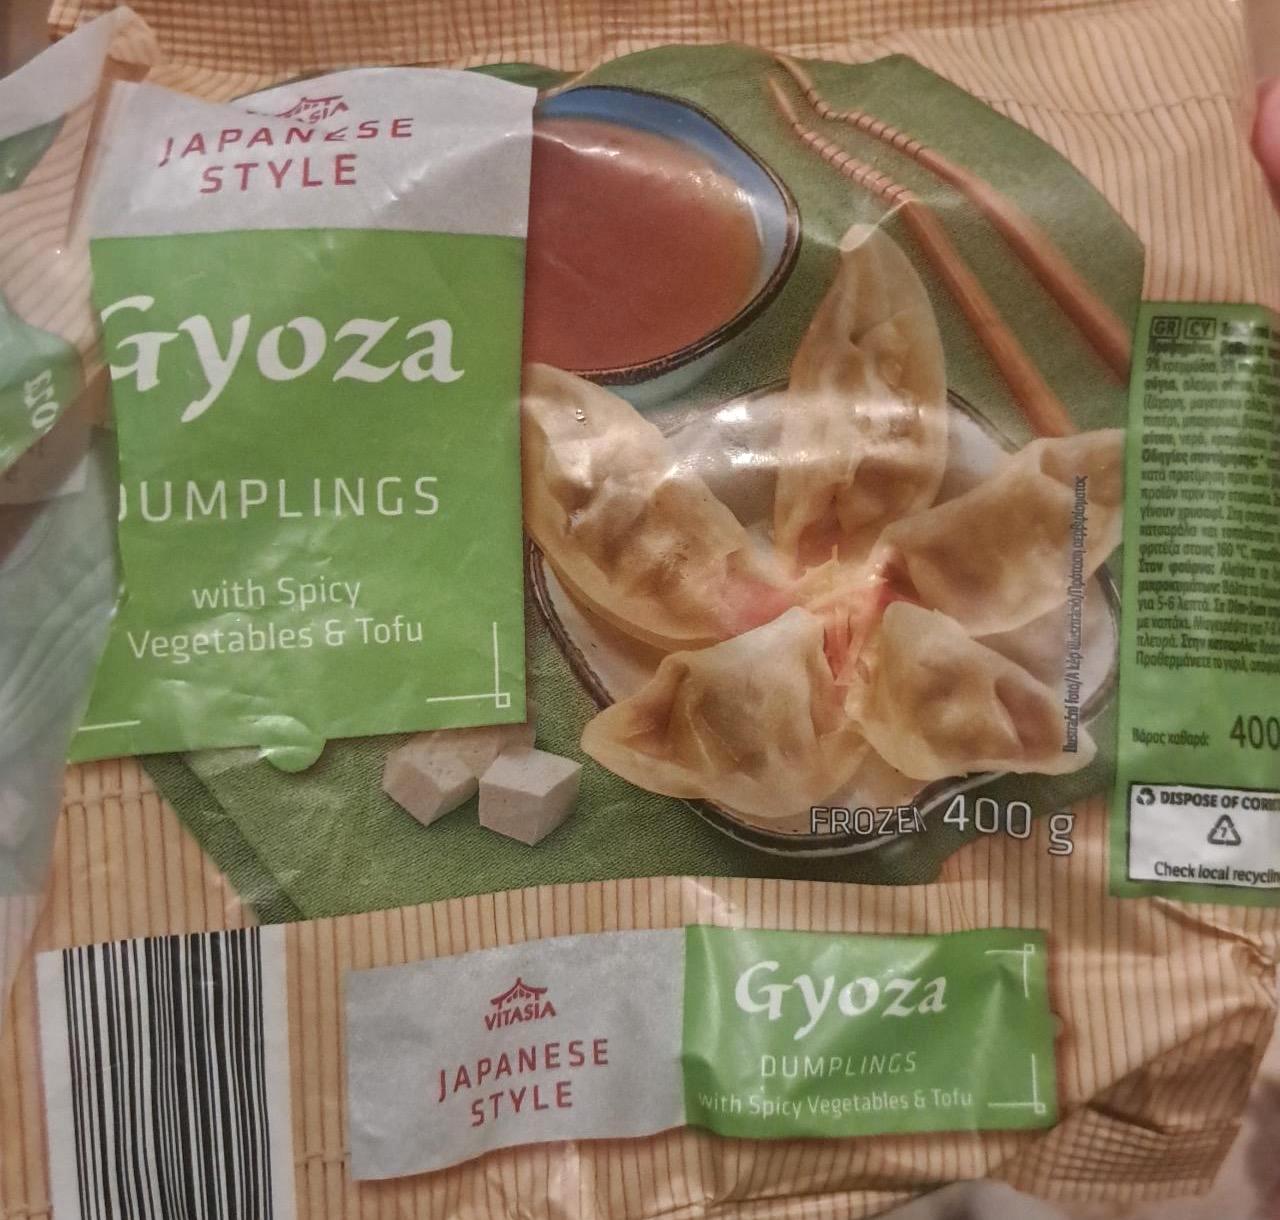 Képek - Gyoza dumplings with spicy vegetables & tofu Vitasia